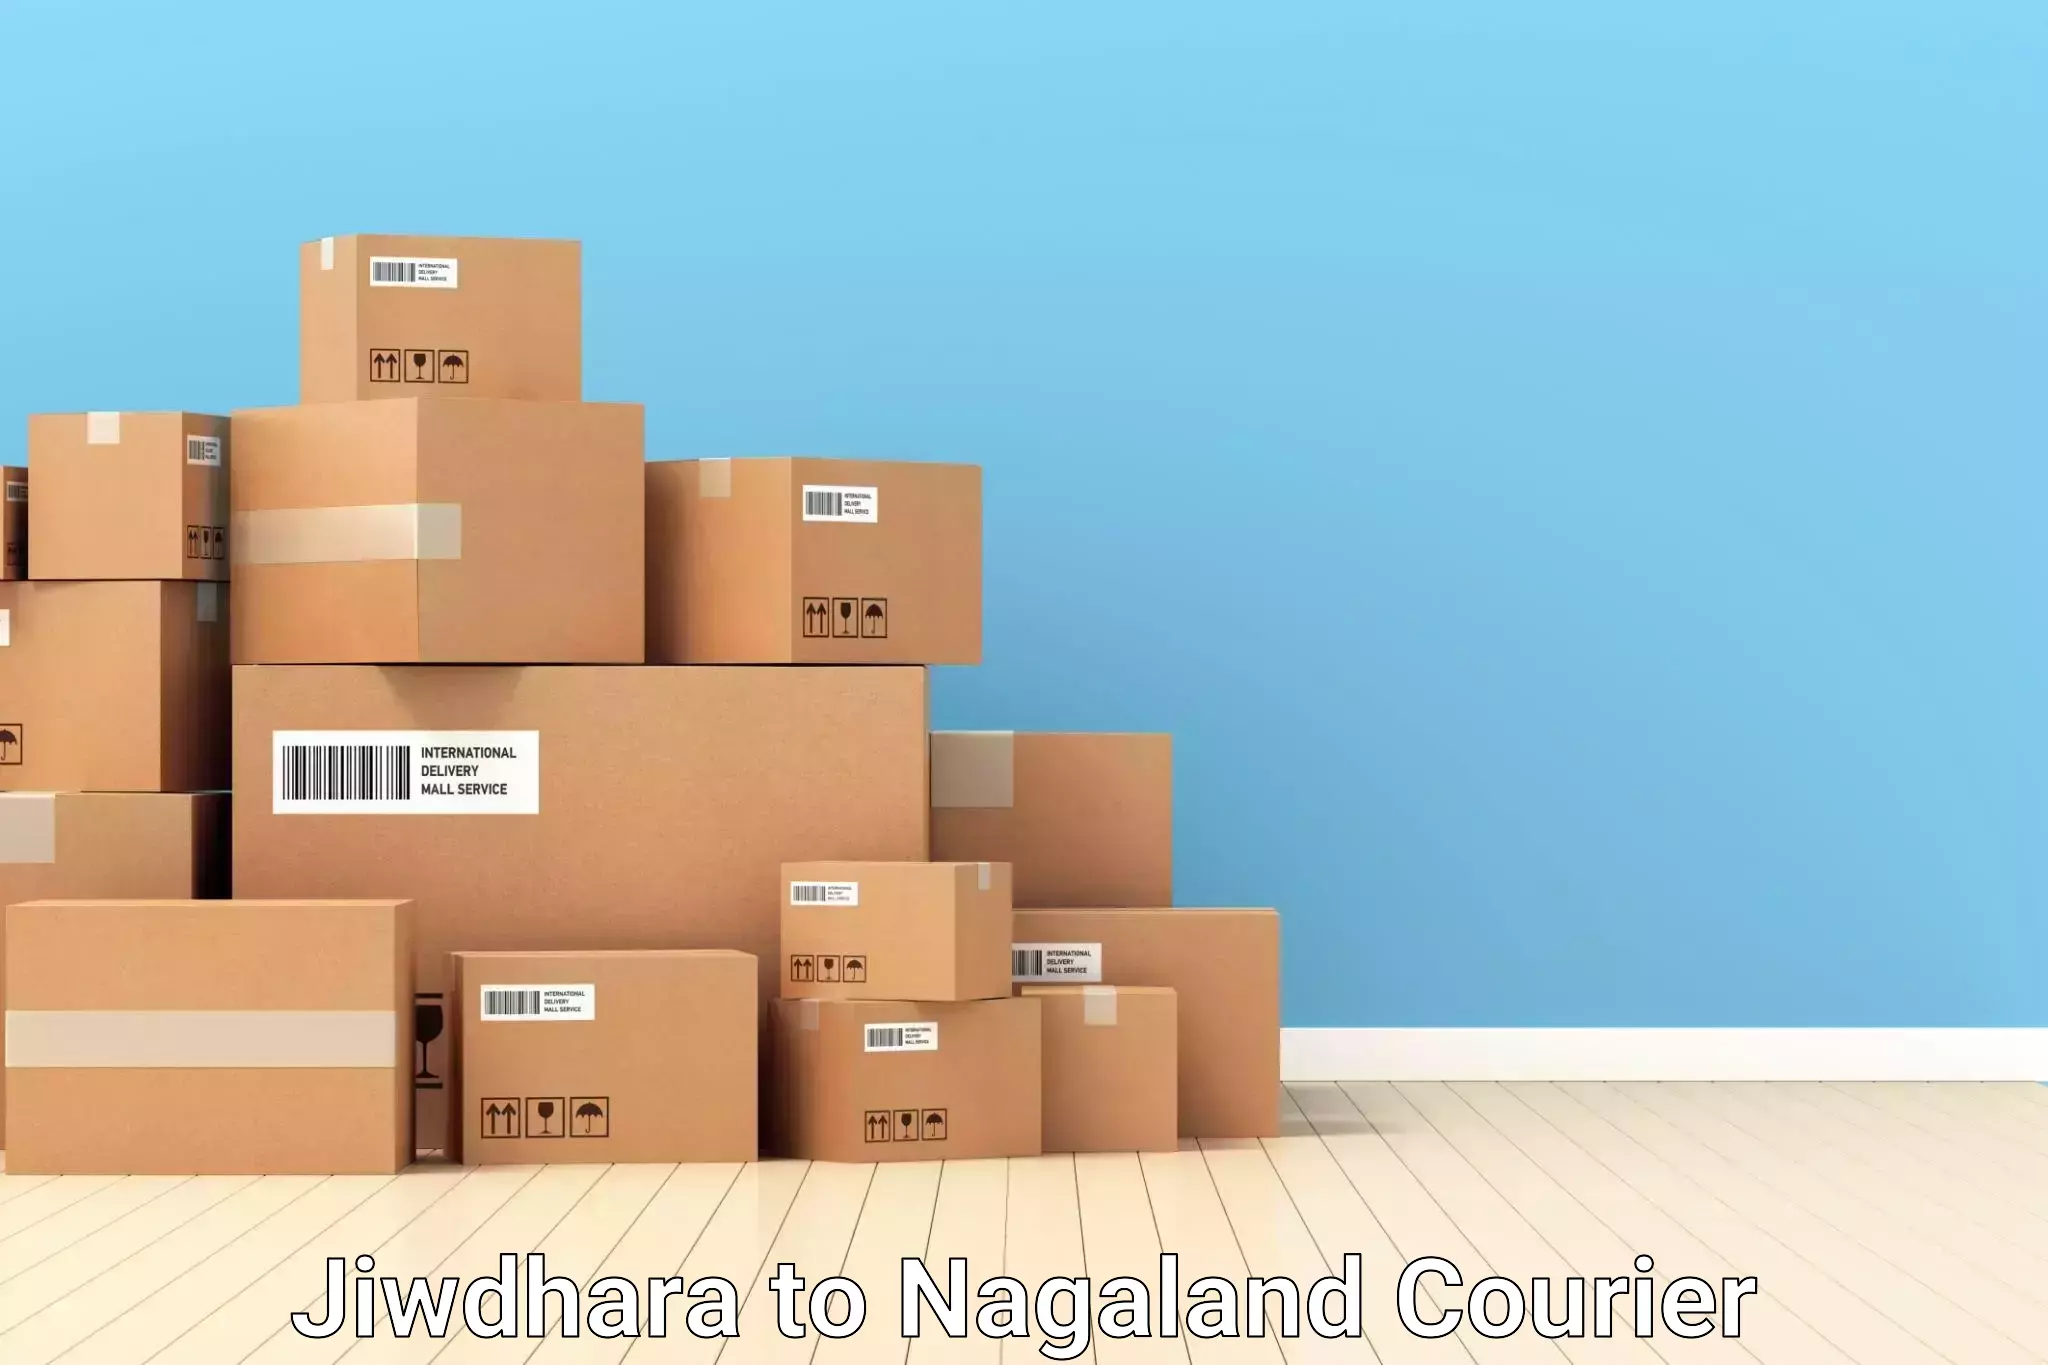 Baggage delivery optimization Jiwdhara to Nagaland